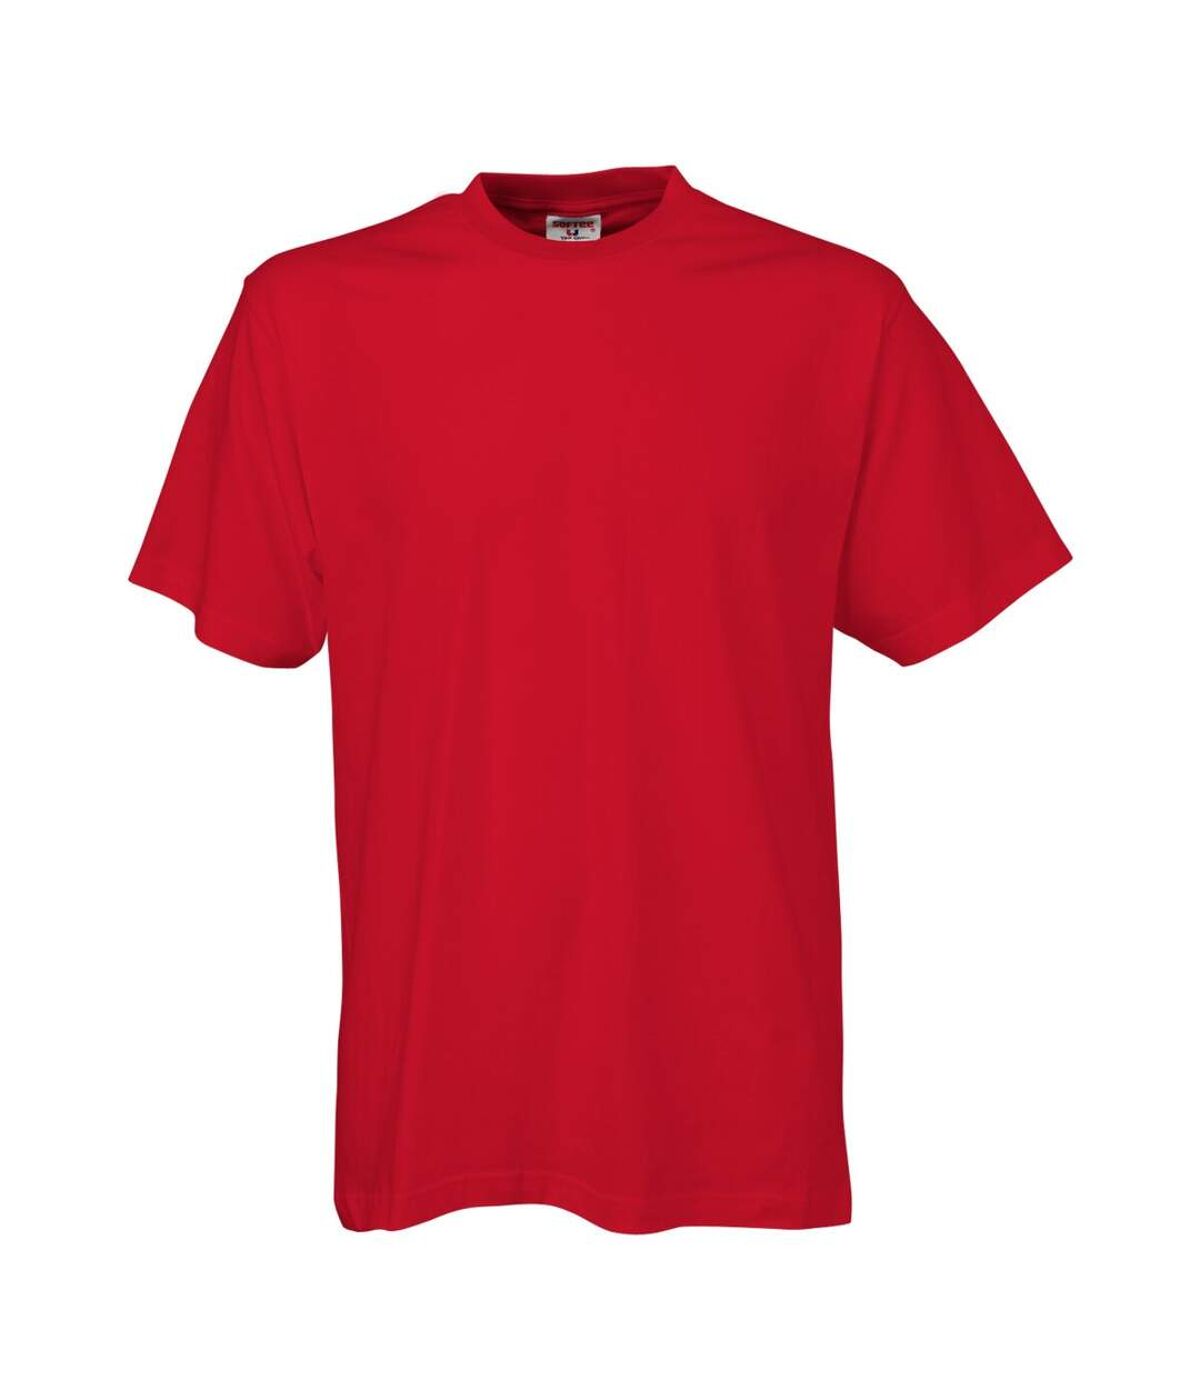 Tee Jays - T-shirt à manches courtes - Homme (Rouge) - UTBC3325